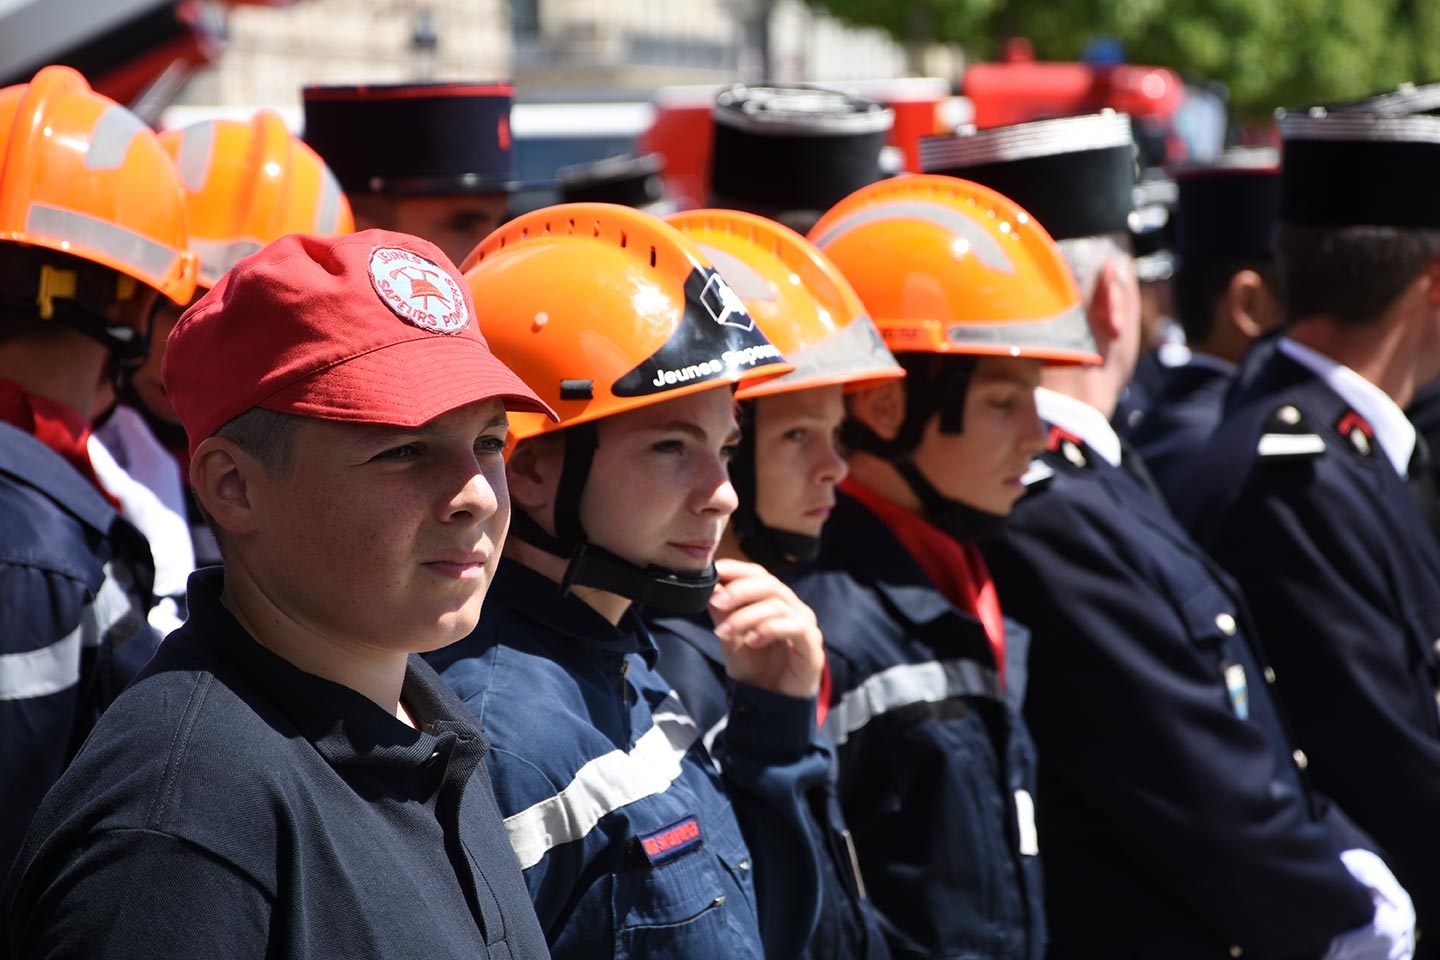 JNSP2017 - Jeunes sapeurs-pompiers (JSP) représentés